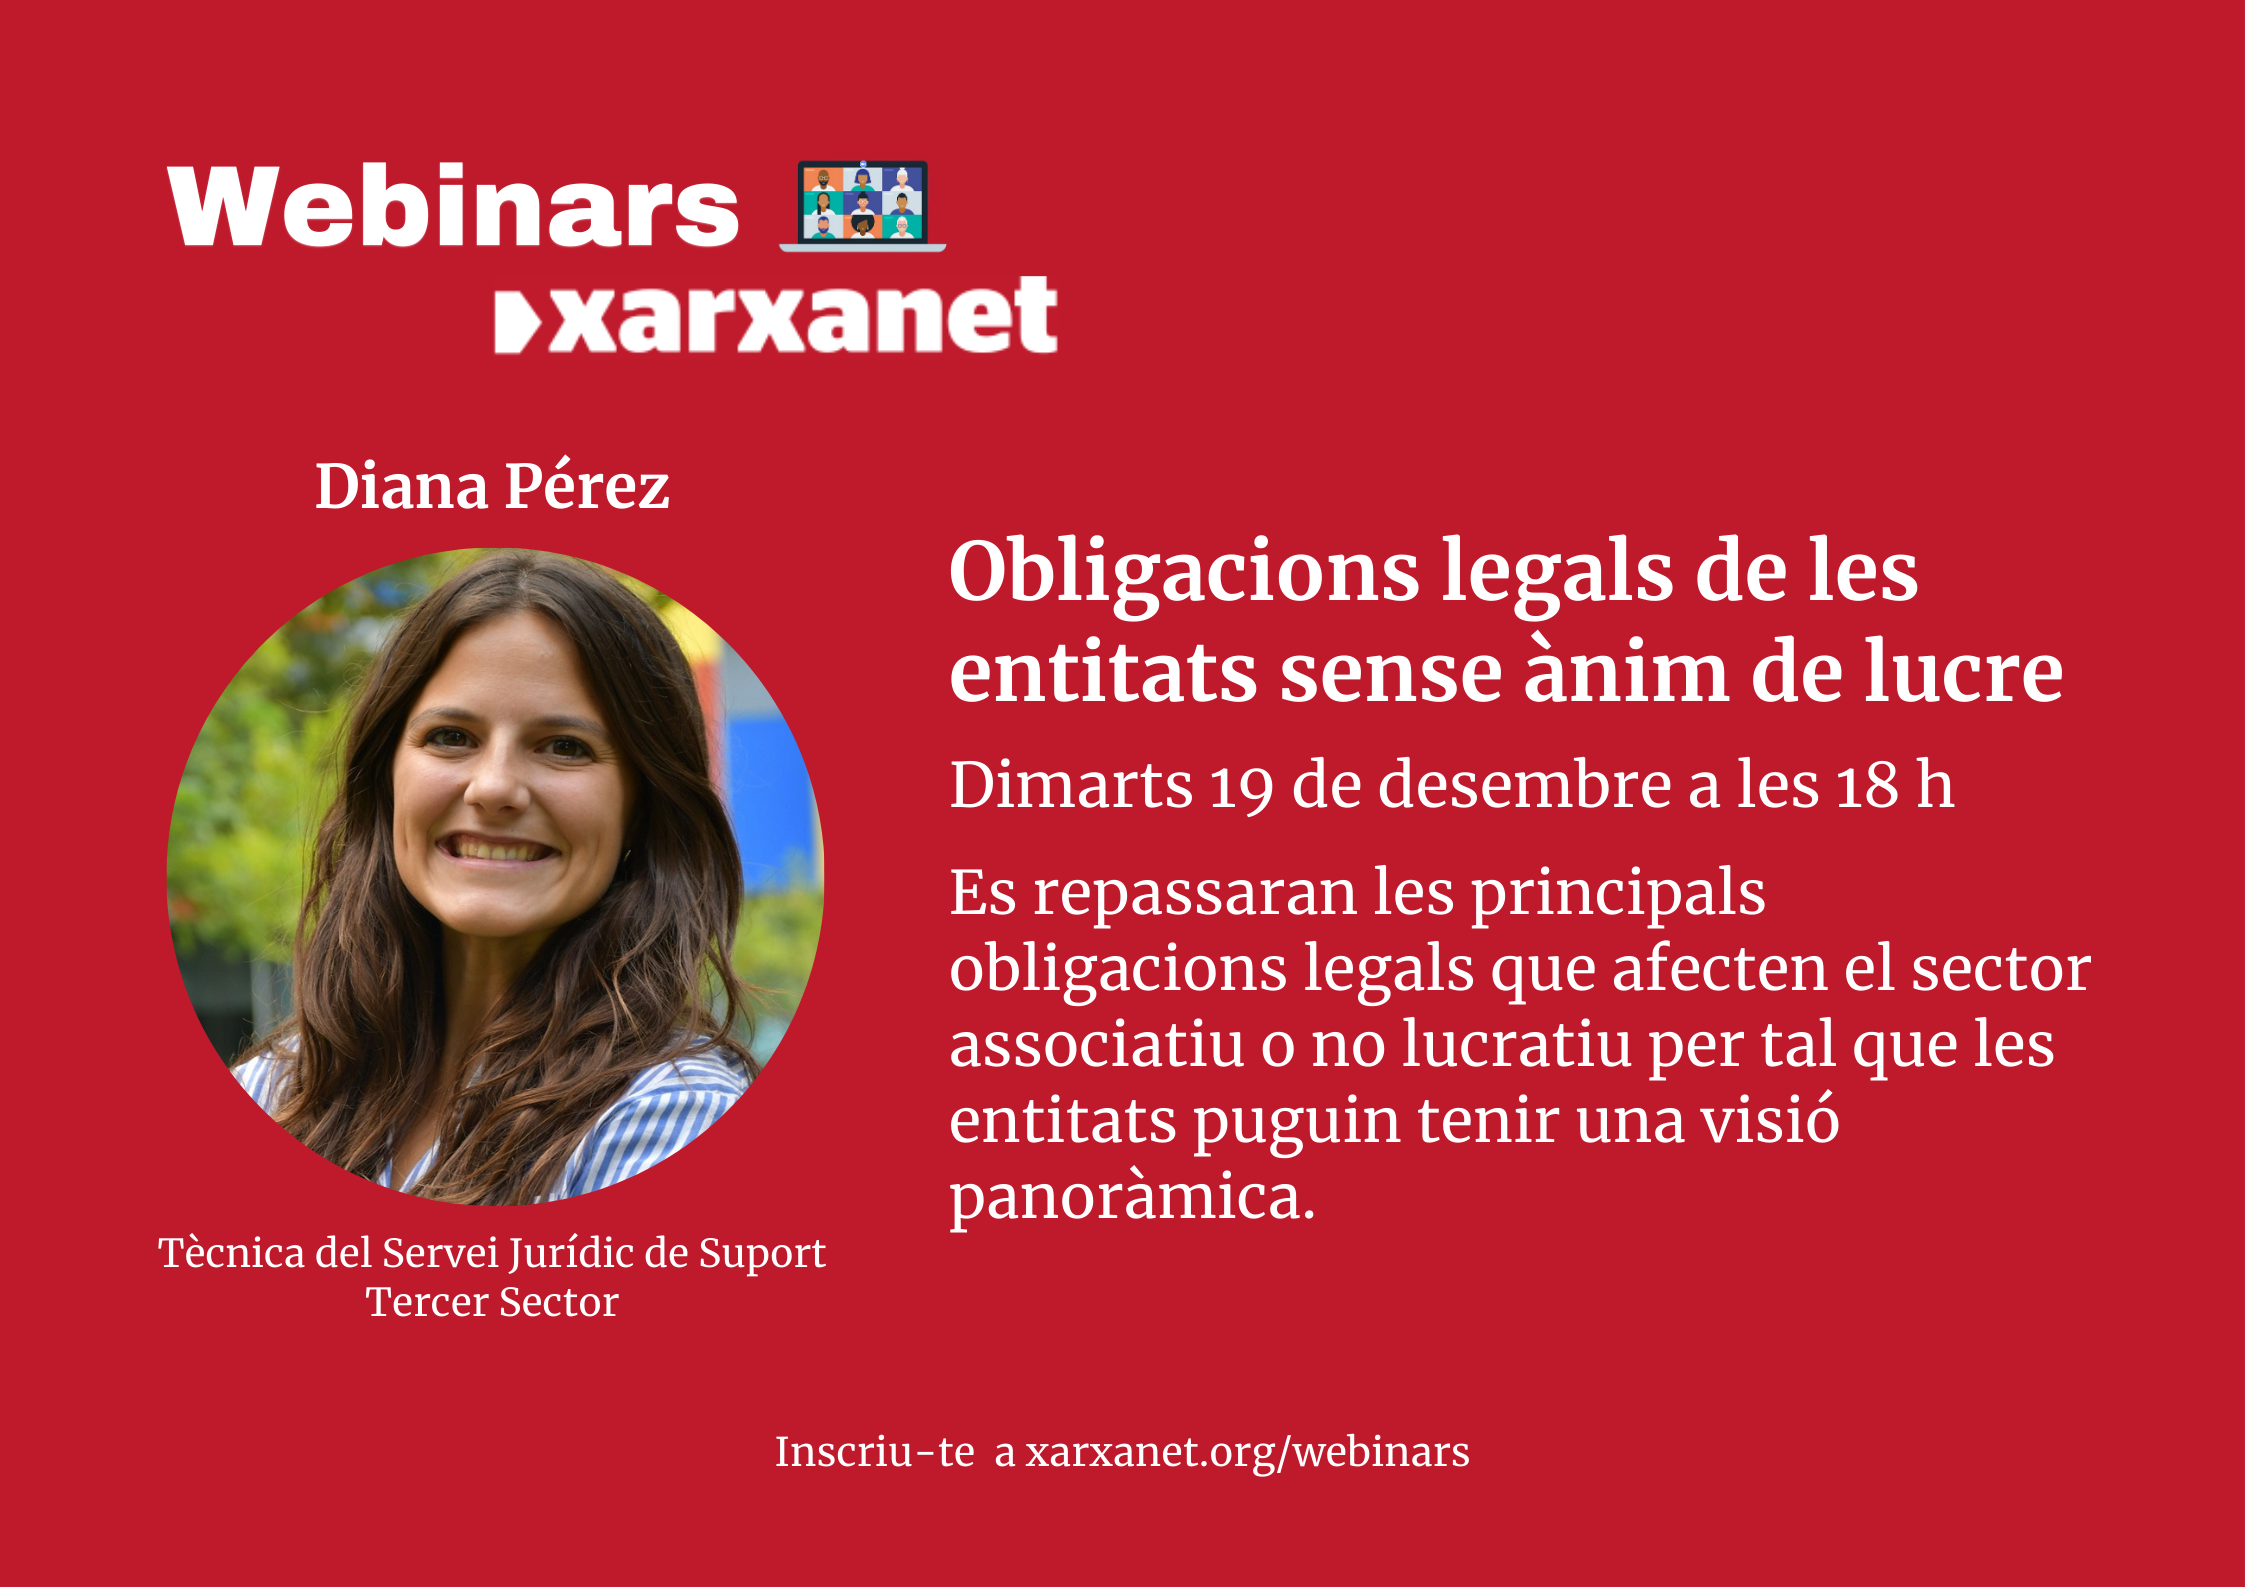 Diana Pérez, tècnica del Servei Jurídic de Suport Tercer Sector.